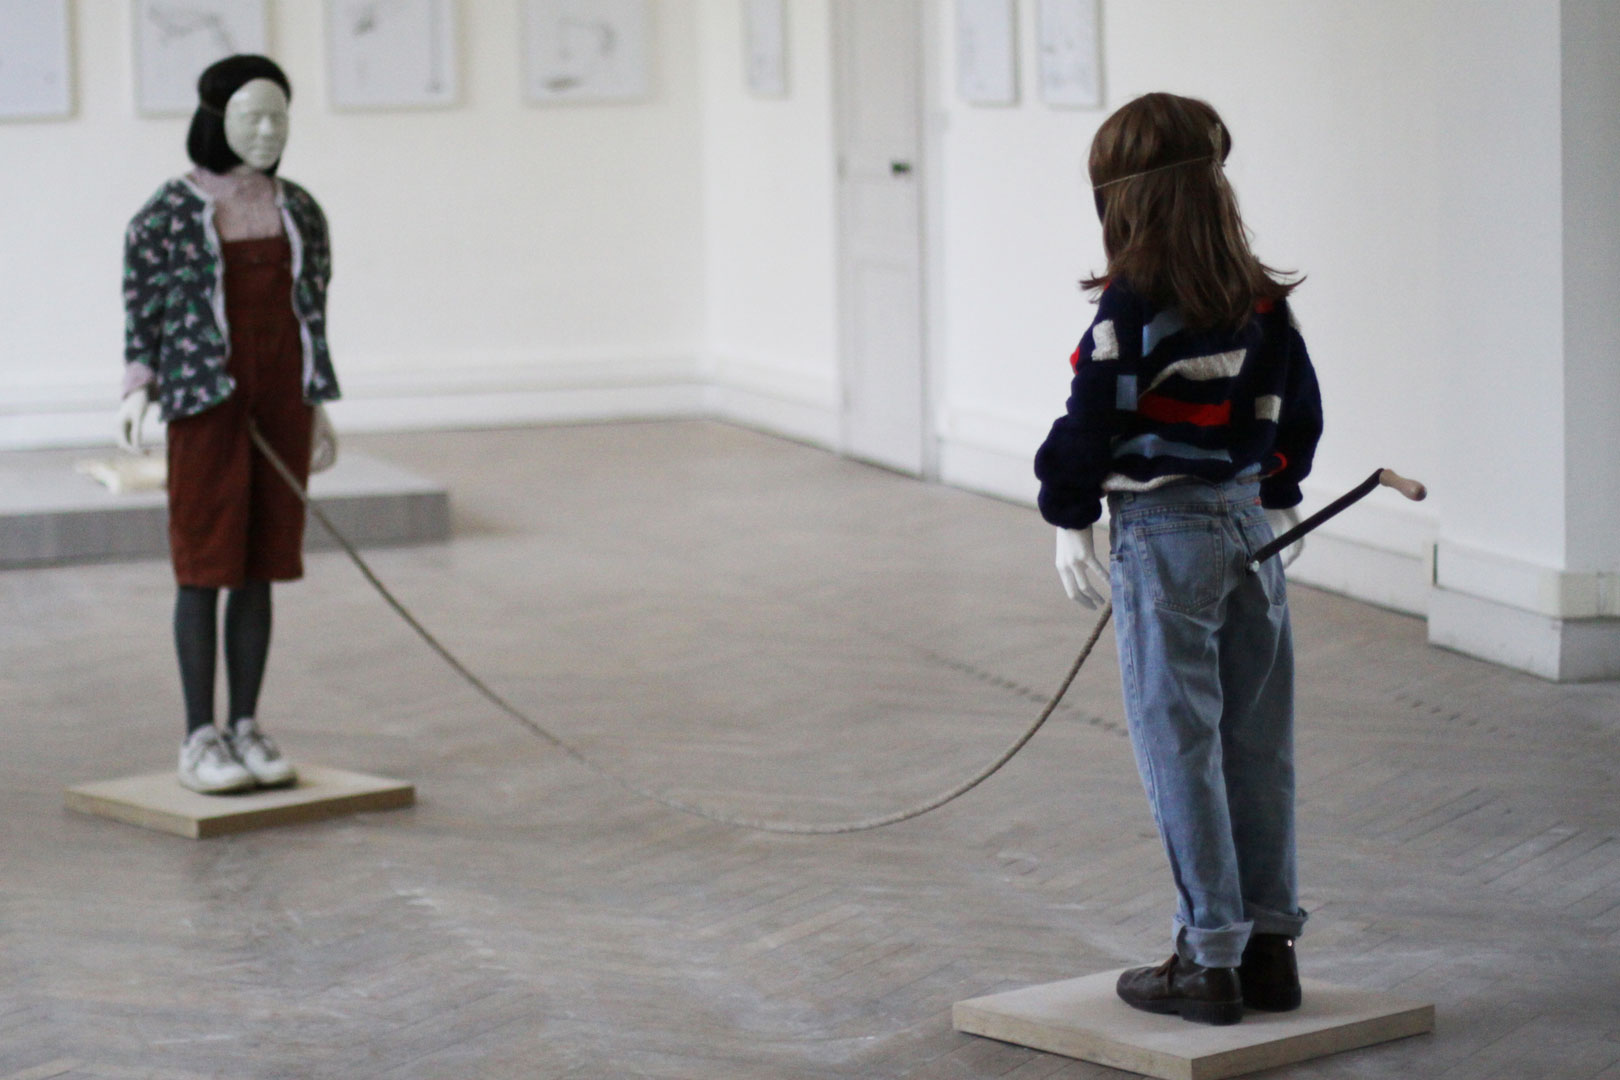 Vue d'ensemble de l'installation intitulée "Mouvement perpétuel". L'installation montre deux figures enfantines en face à face . Elles sont réunies par une corde sortant de leurs braguettes . La corde semble défier les lois de la gravité. Une manivelle sort de leur derrière.